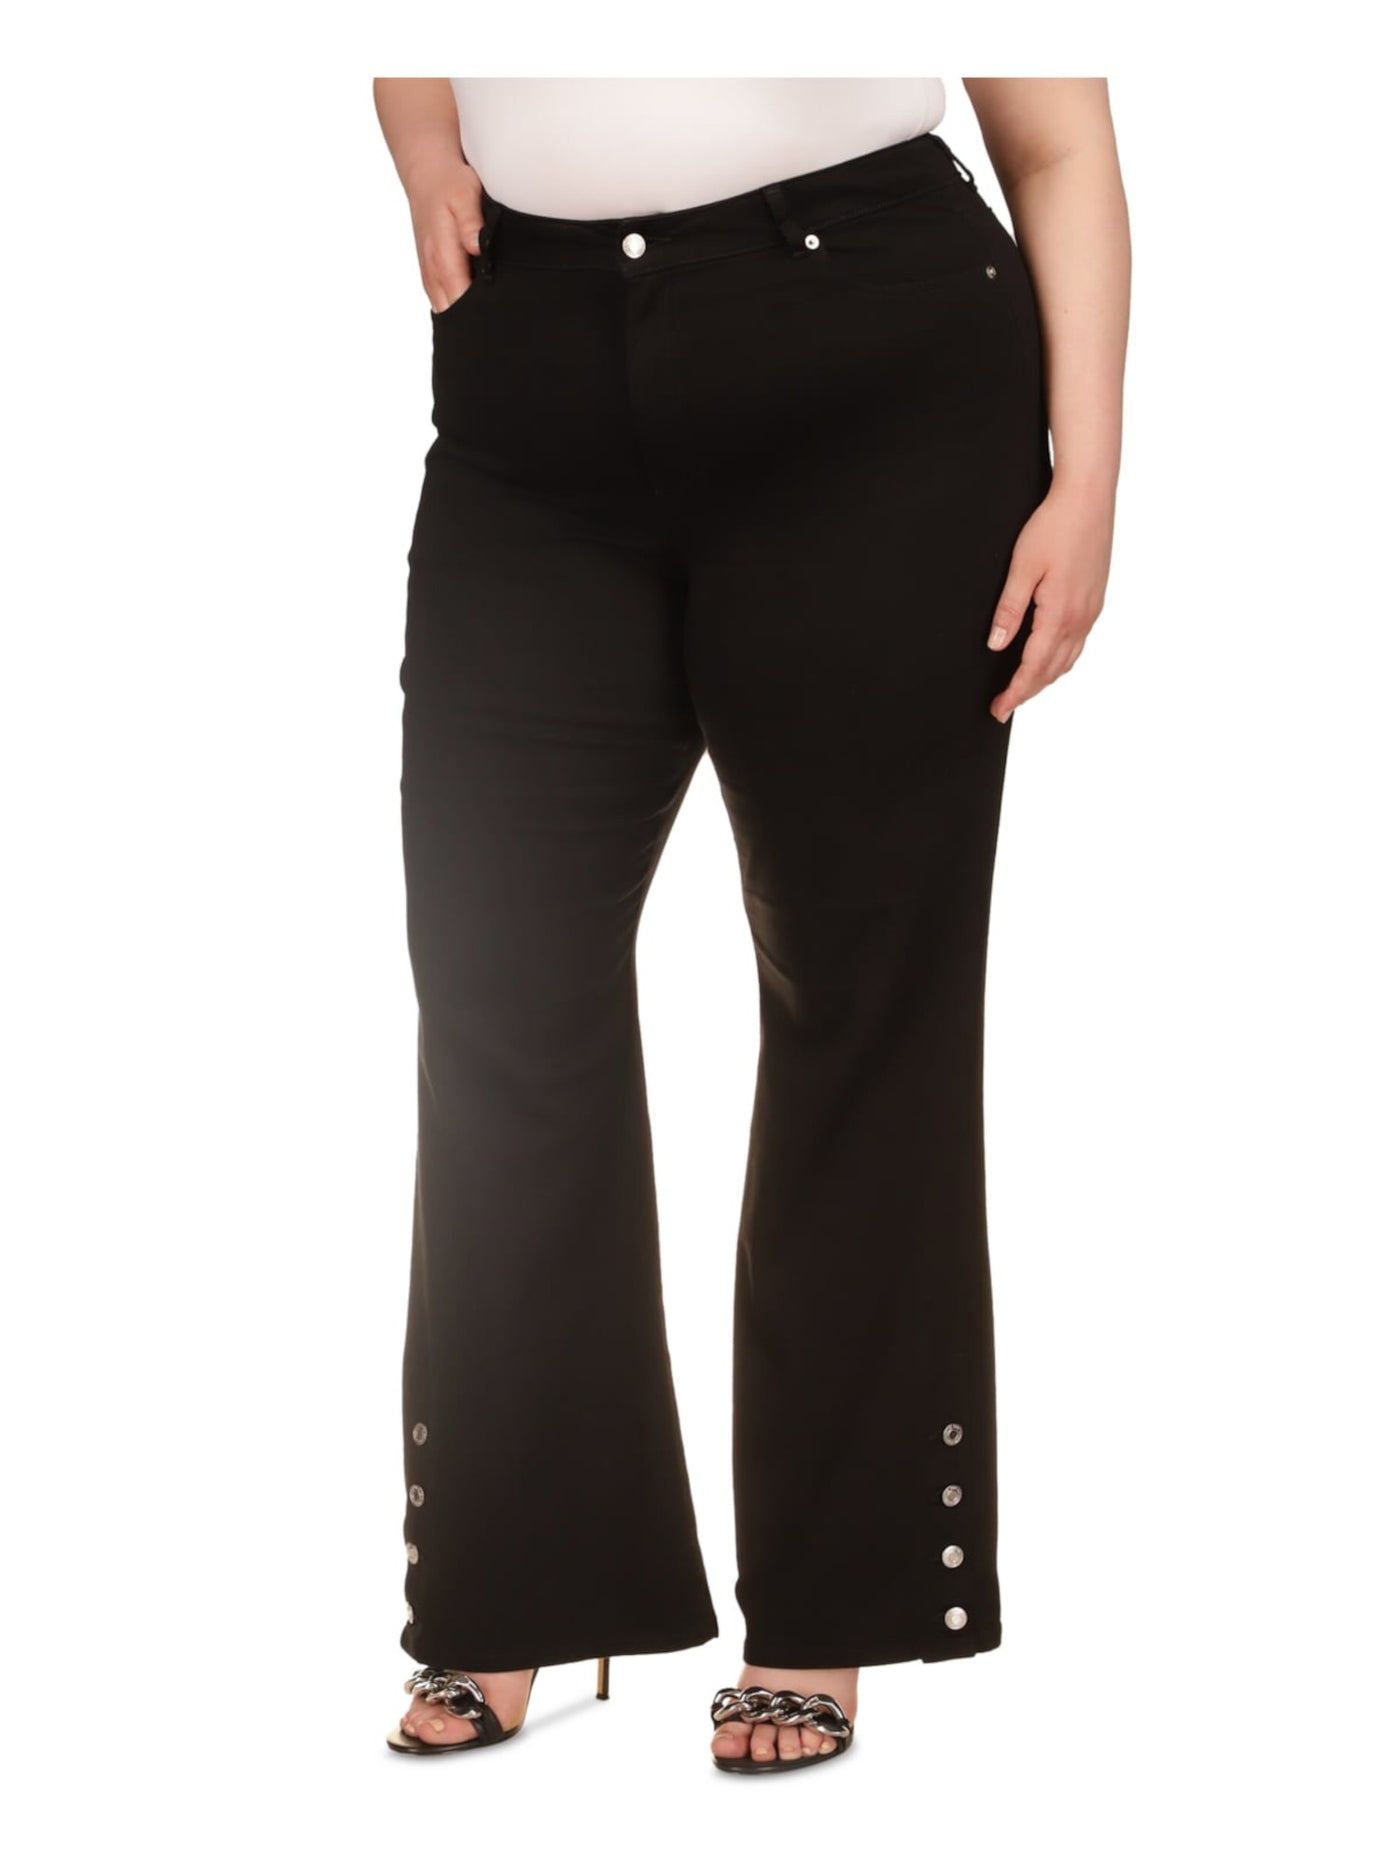 MICHAEL KORS Womens Black Zippered Pocketed Button-hems High Waist Jeans Plus 20W